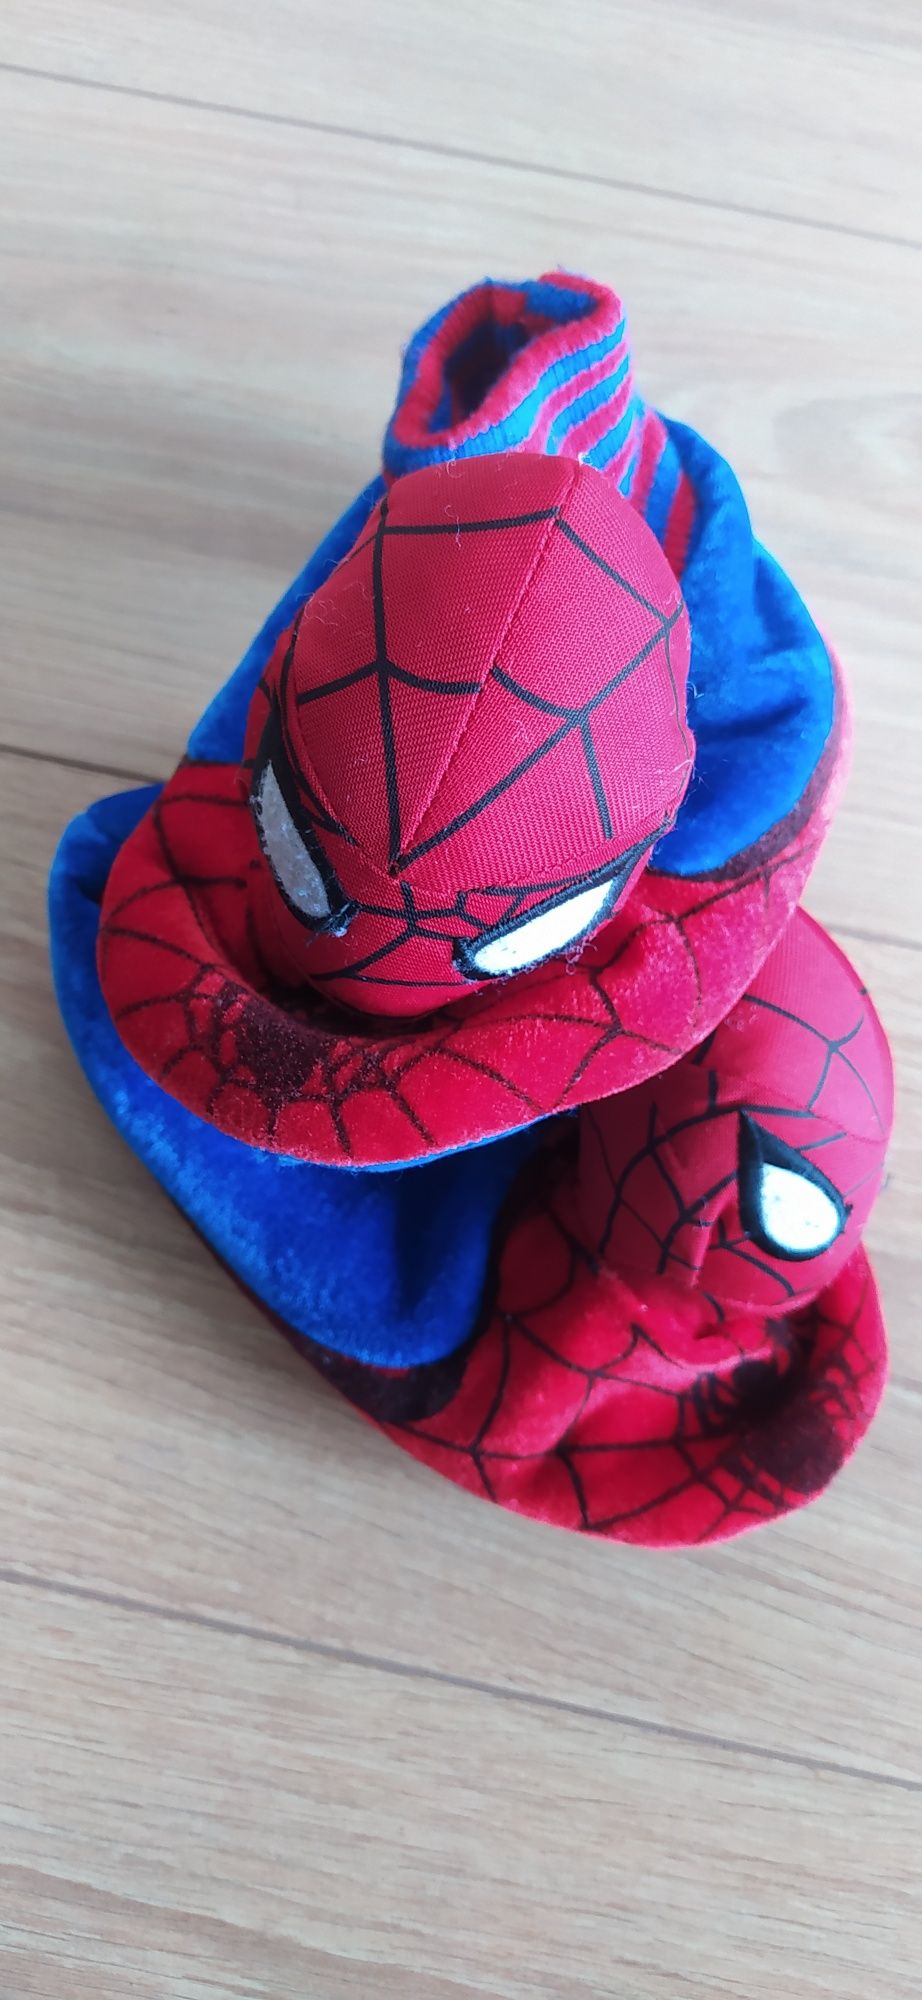 Pantufas Spiderman